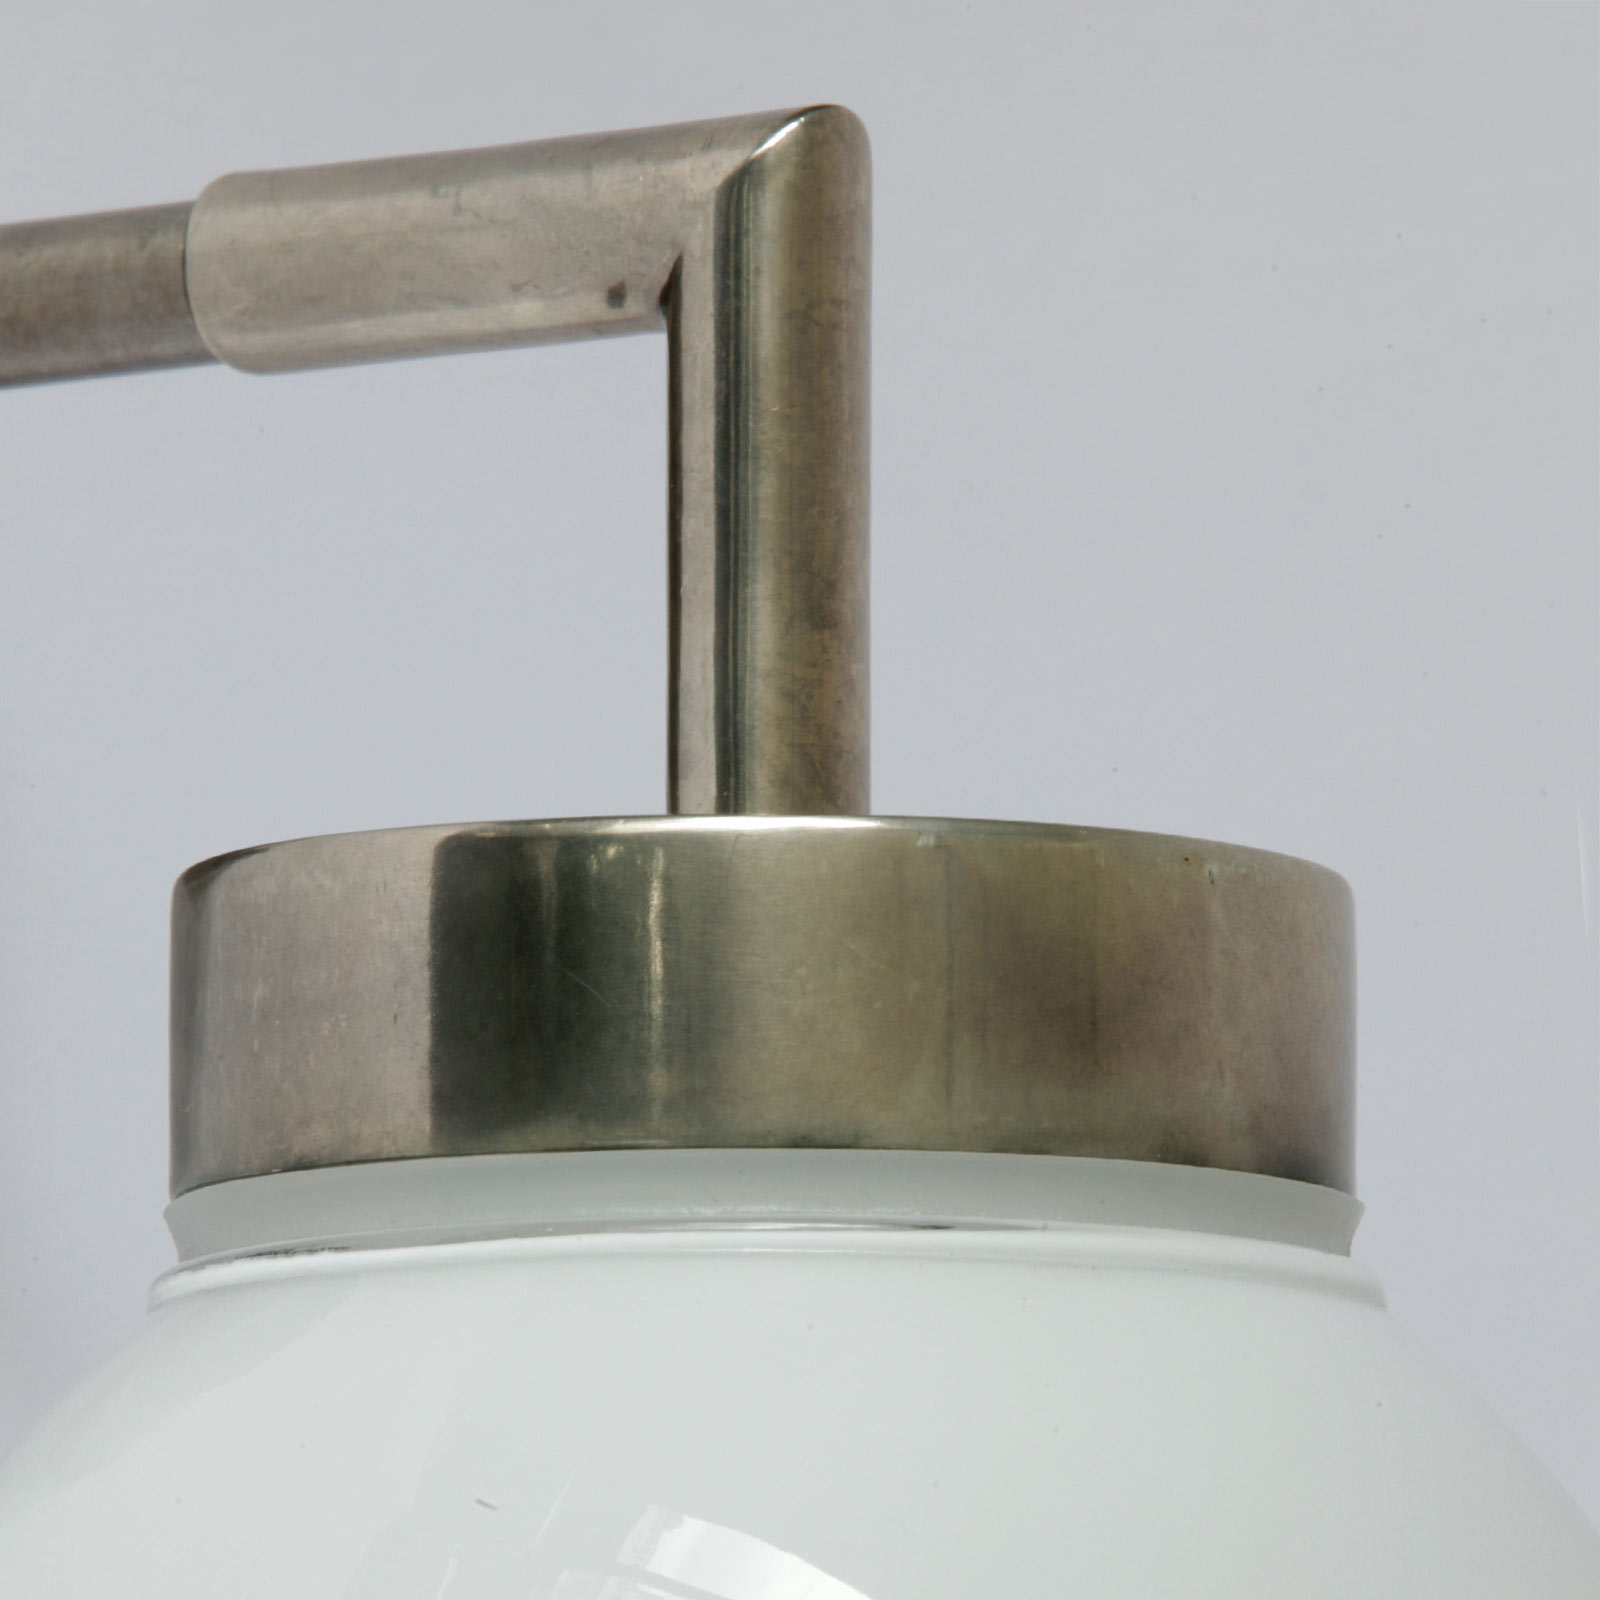 Badezimmer-Wandlampe mit zwei Kugeln, IP65: Beispiel Messing alt-silbern patiniert, opales Glas